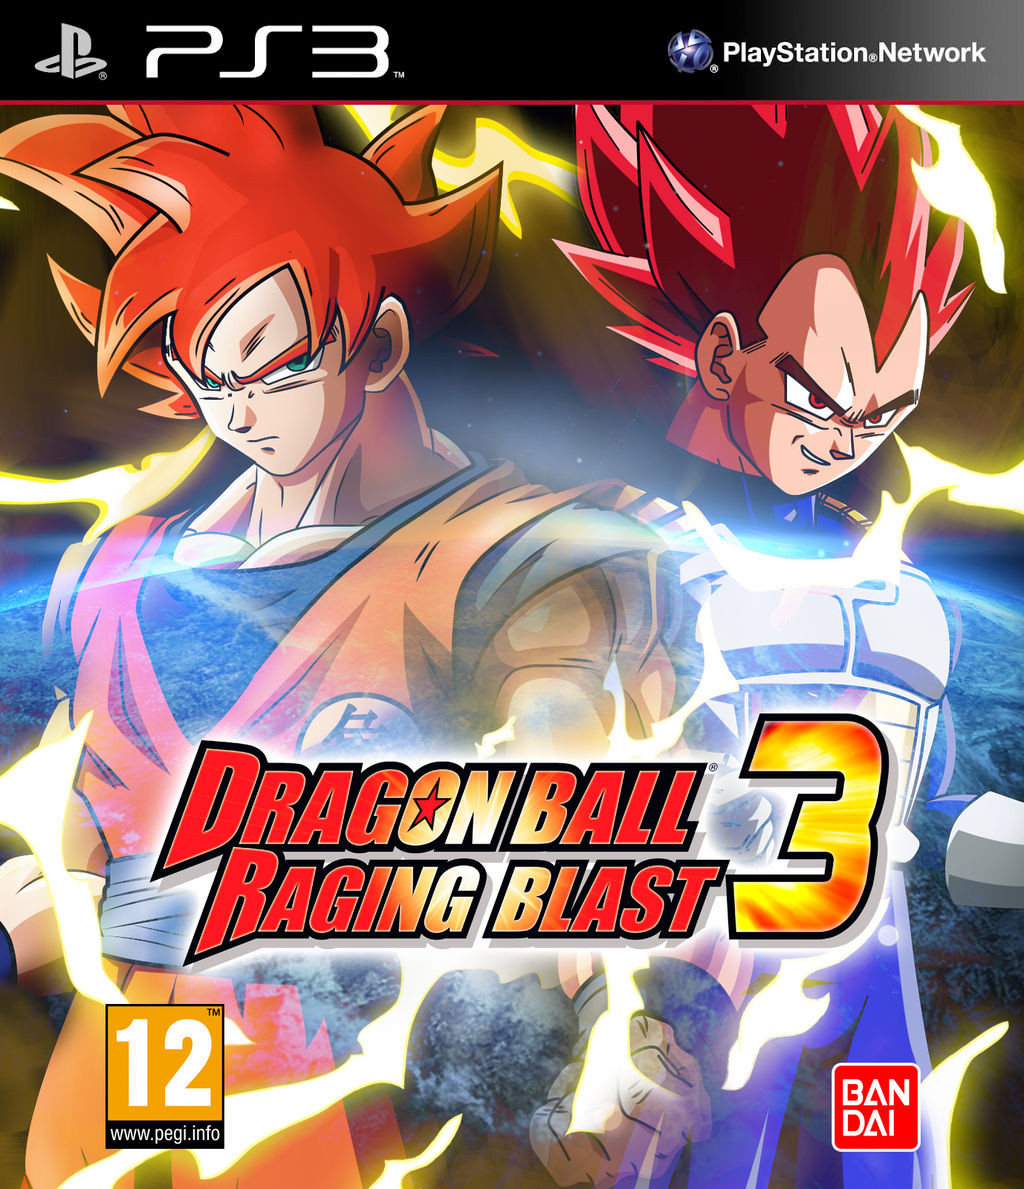 Dragon Ball Raging Blast 3 Fan Cover by IgnisWind on ...